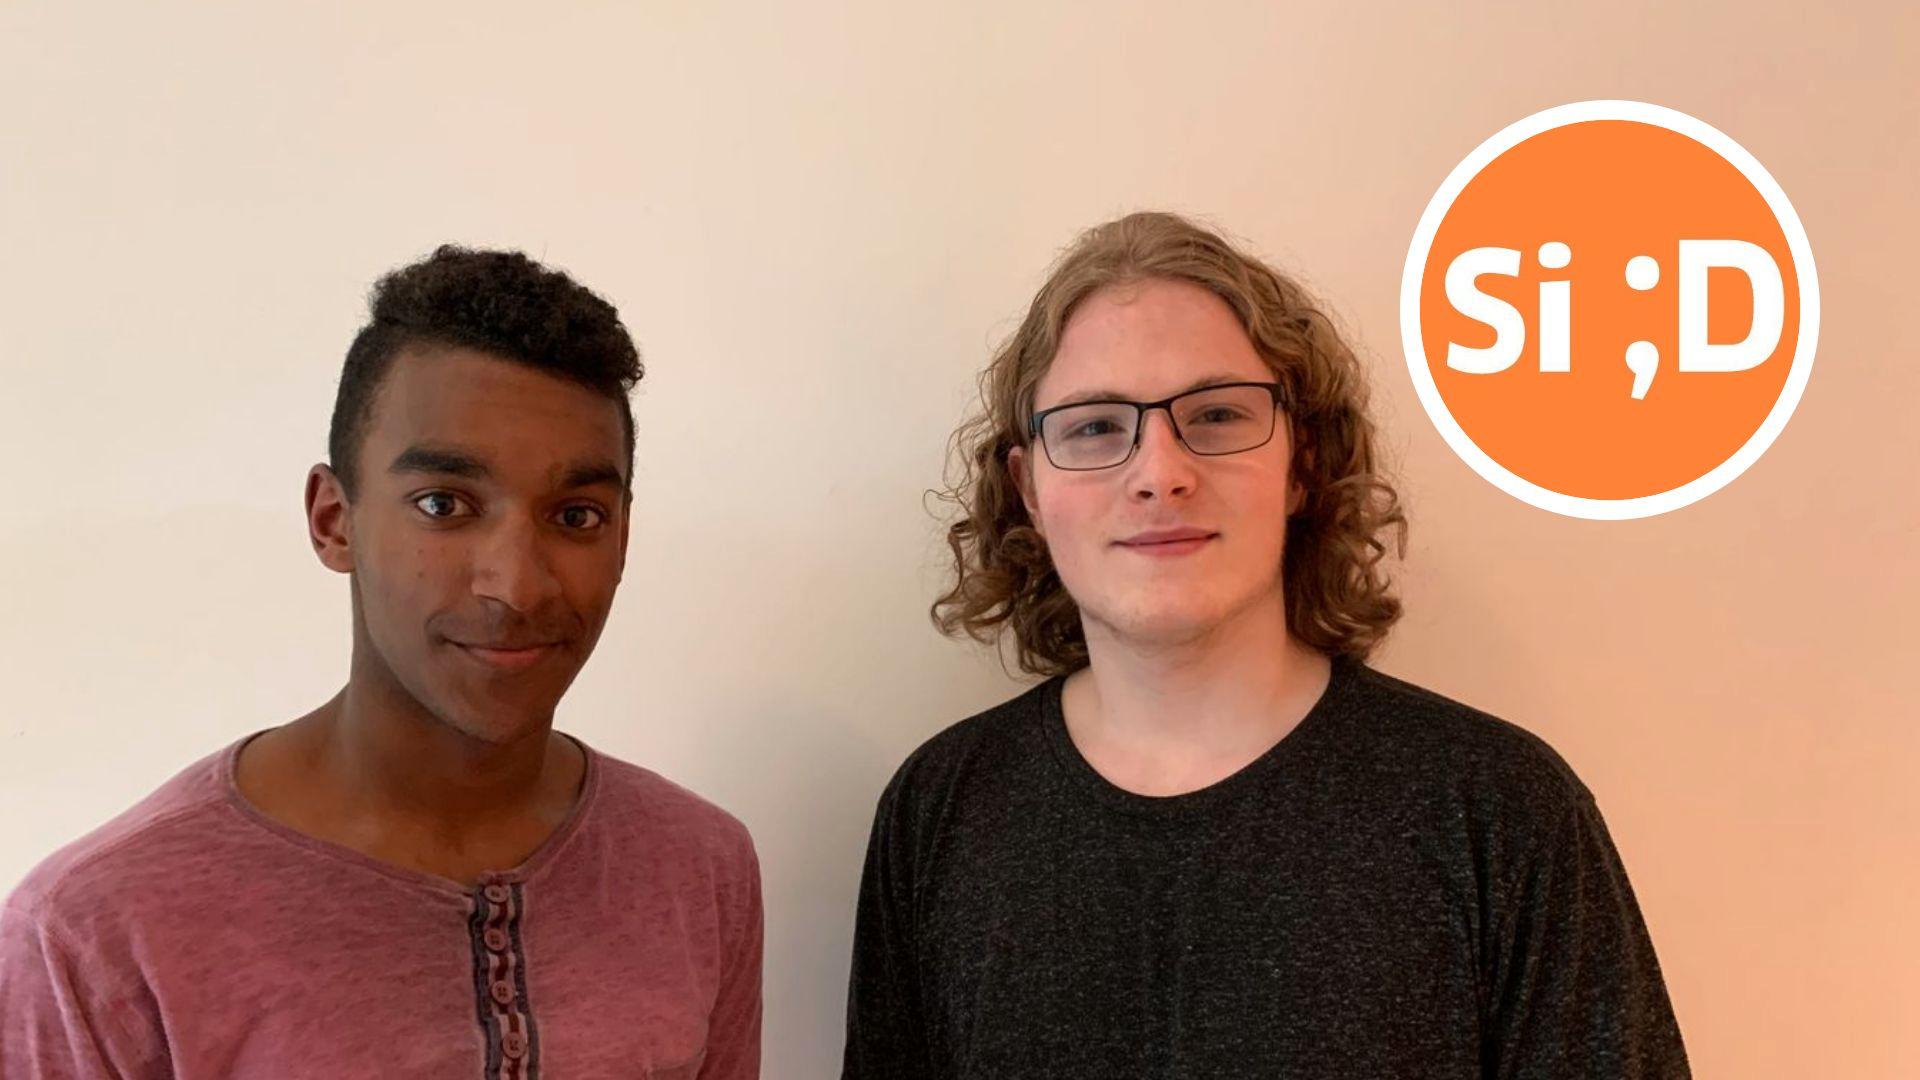 Lillebror er langt fra den eneste som opplever rasisme og diskriminering på bakgrunn av hudfarge, skriver Simen Bondevik (19). Her er han med broren, Gabriel Bondevik (17).